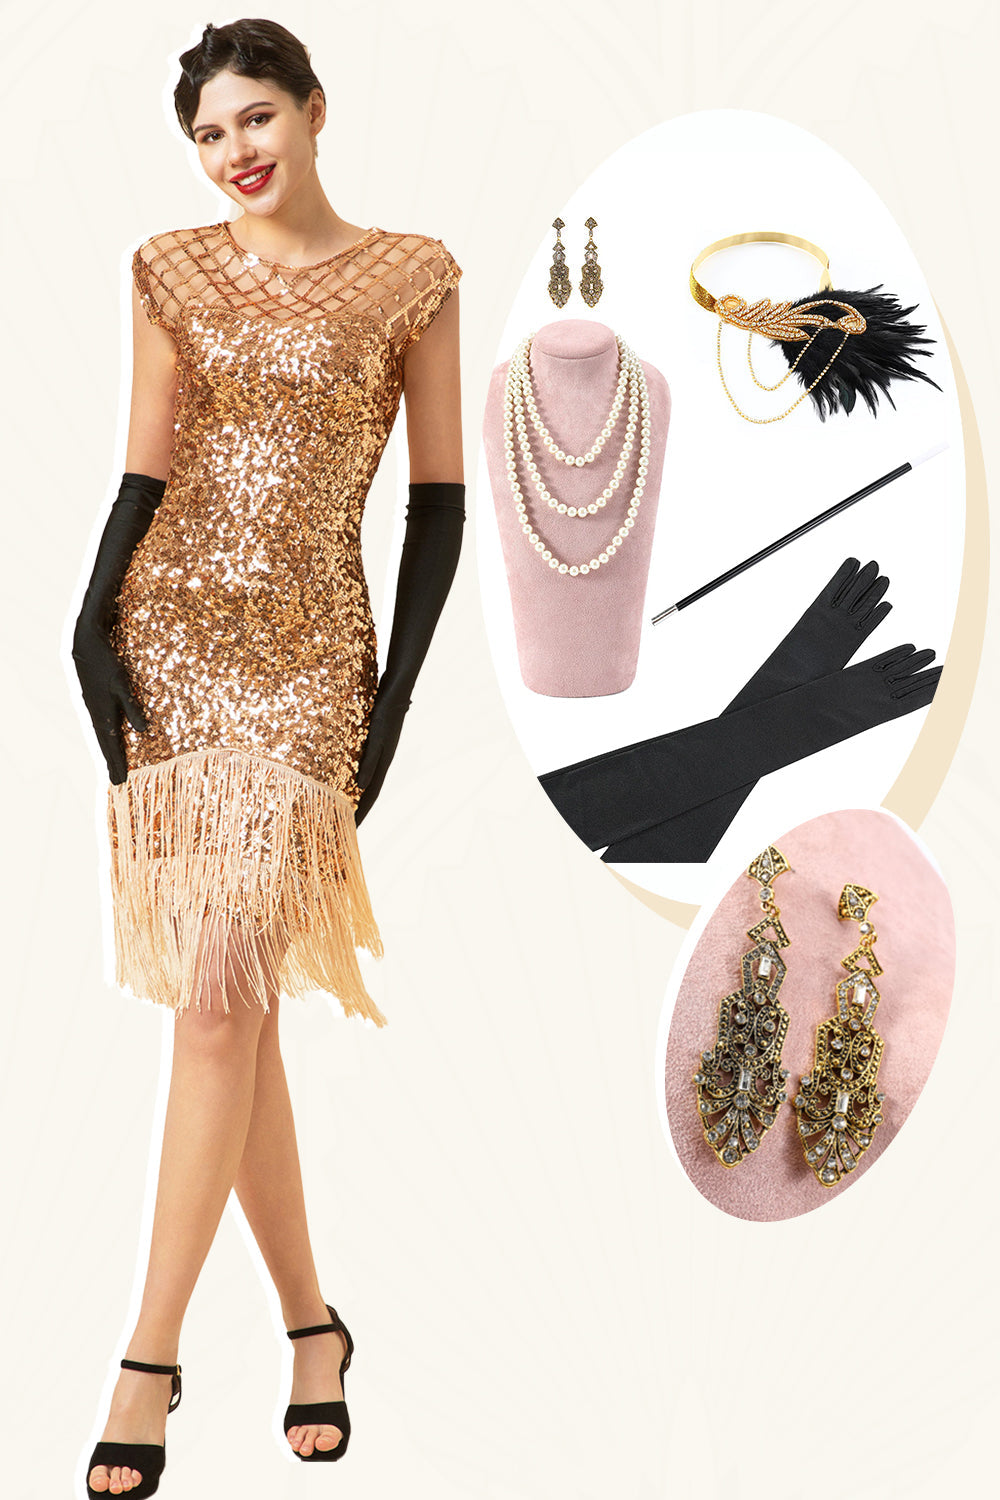 Rosa Kappenärmel Paillettenfransen 1920er Jahre Gatsby Flapper Kleid mit 20er Jahre Accessoires Set